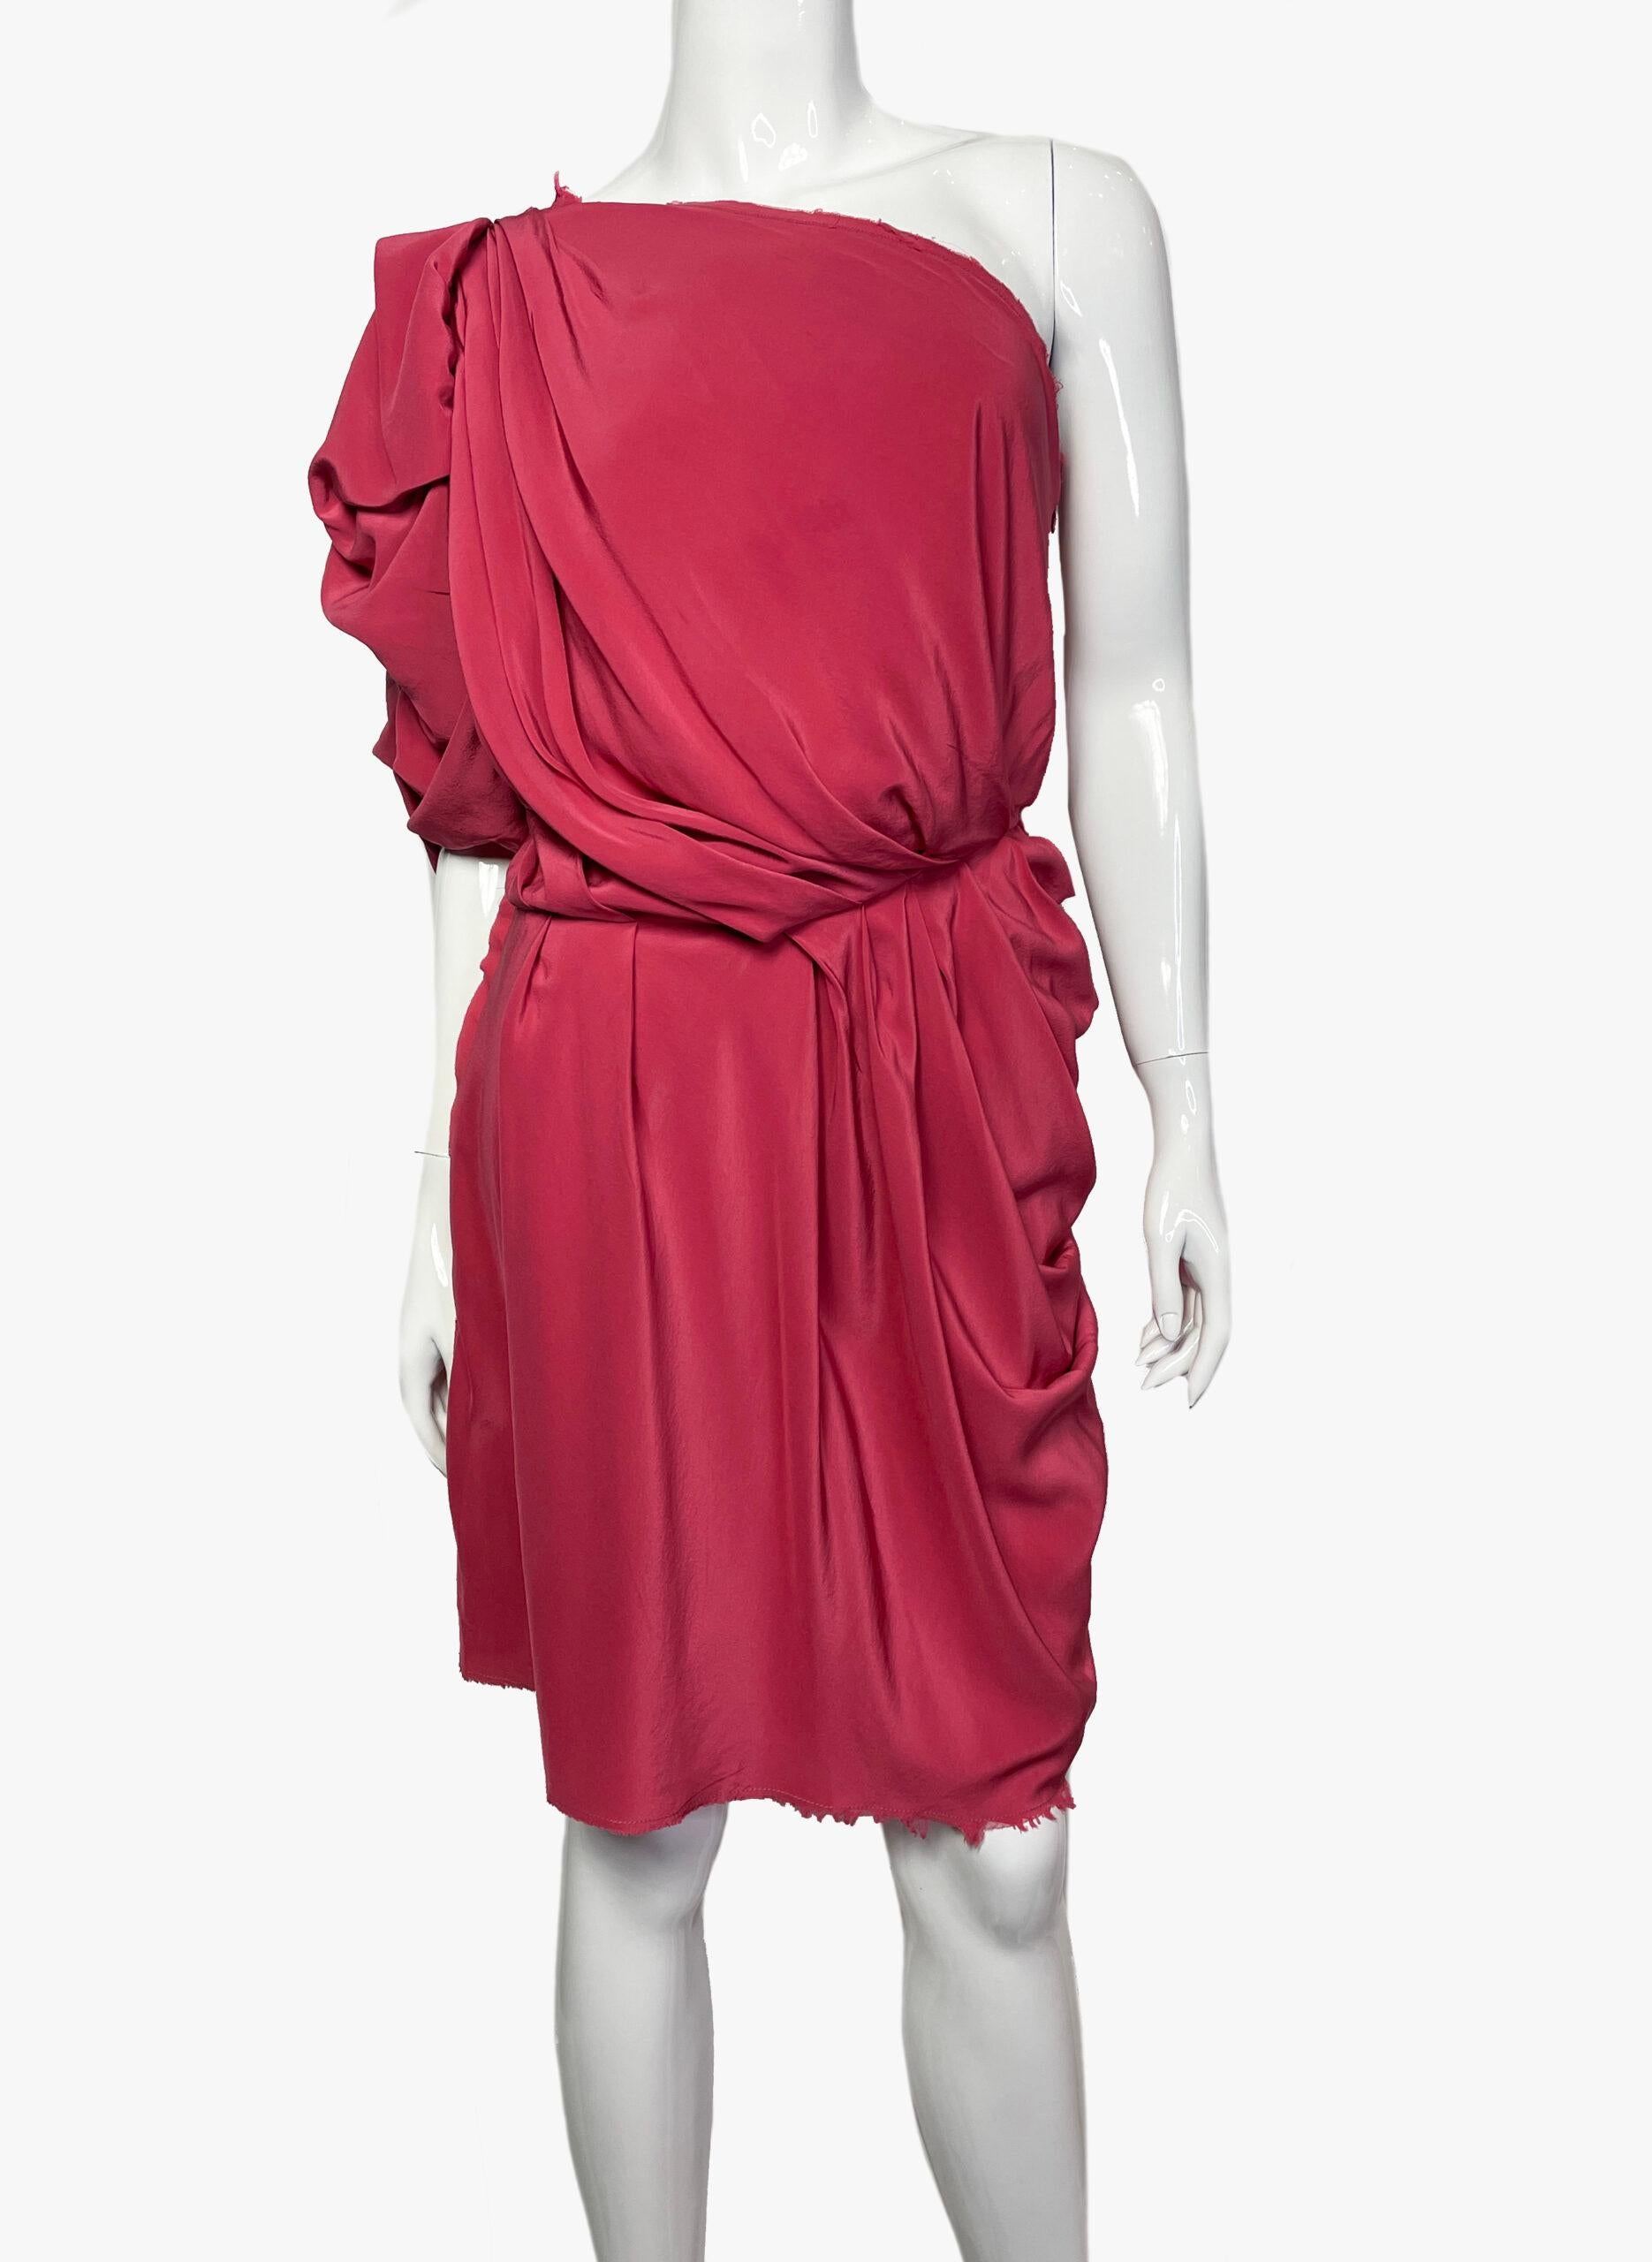 Lanvin Mini drapiertes Kleid mit einer Schulter von Alber Elbaz in Rot. 
Collection'S 2010
Stoff: 100% Seide
Größe: 38 FR (M)
Zustand: Perfekt

........Zusätzliche Informationen ........

- Das Foto kann sich aufgrund der Beleuchtung während der